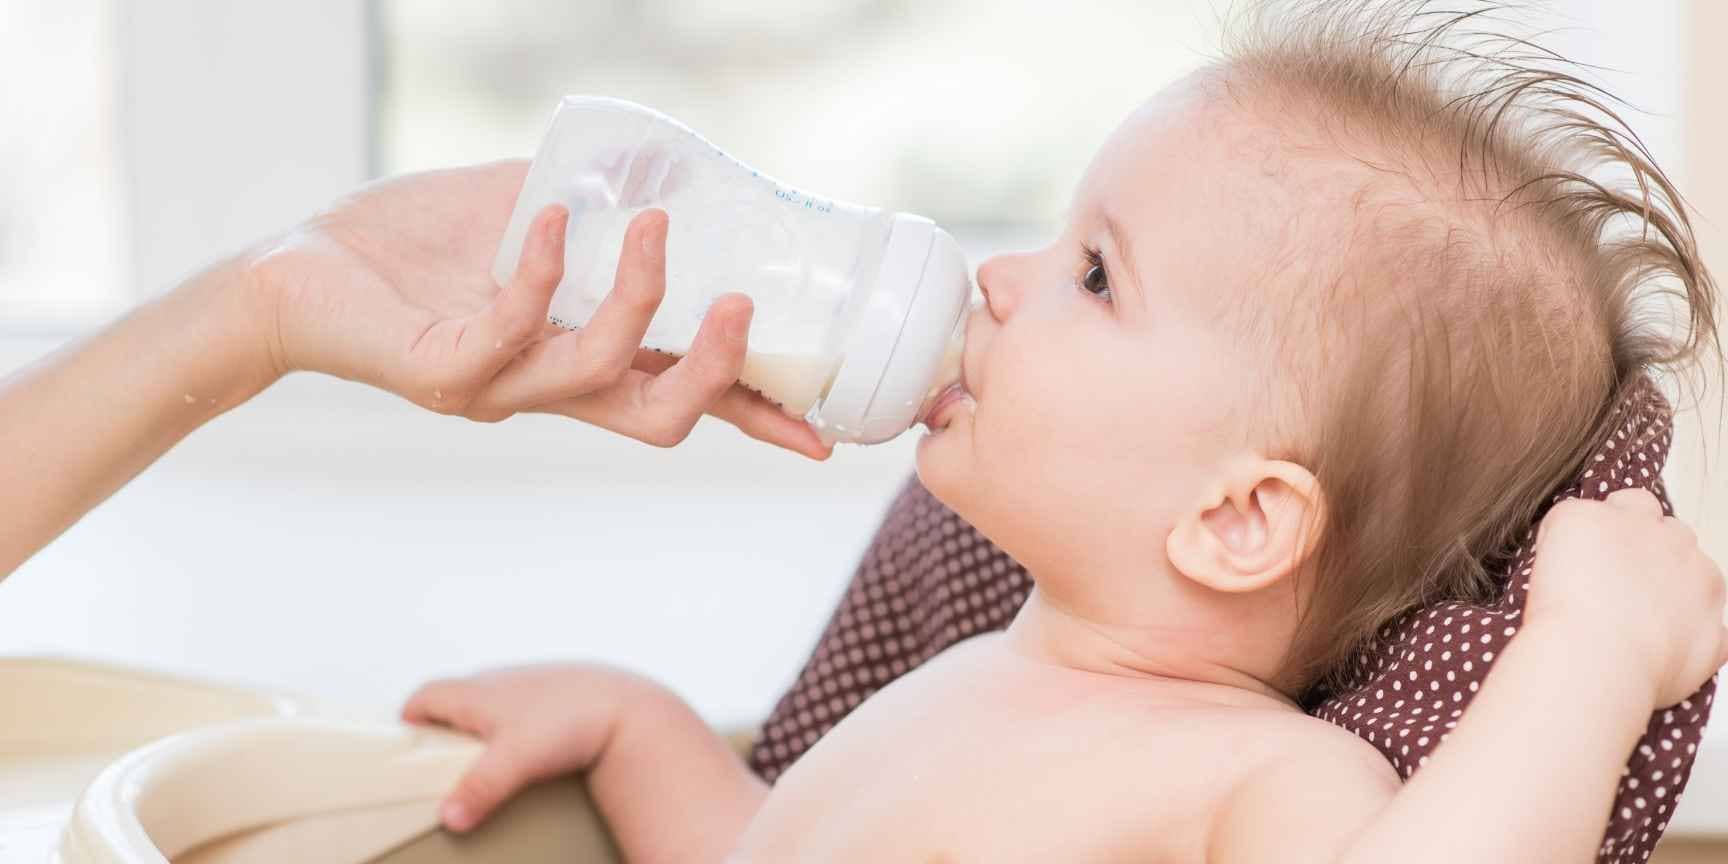 Biostime Lait infantile bio 2ème âge 🍼 Bébé de 6 à 12 mois